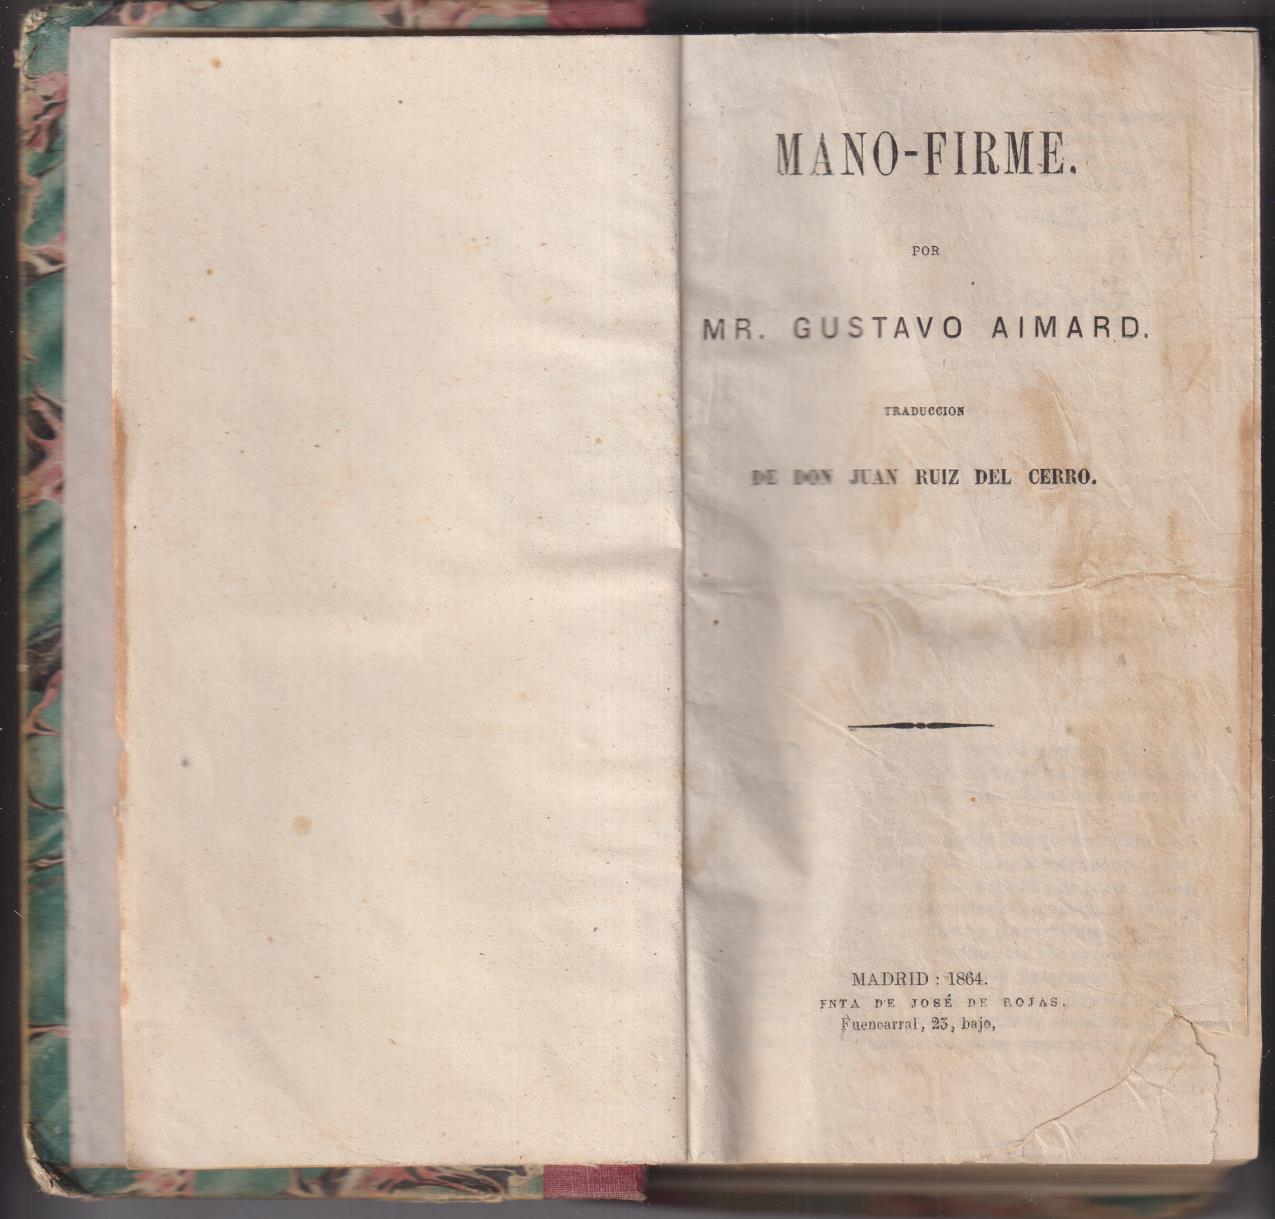 Gustavo Aimard. Mano-Firme. 1ª Edición, Imprenta de José de Rojas. Madrid 1864, RARO